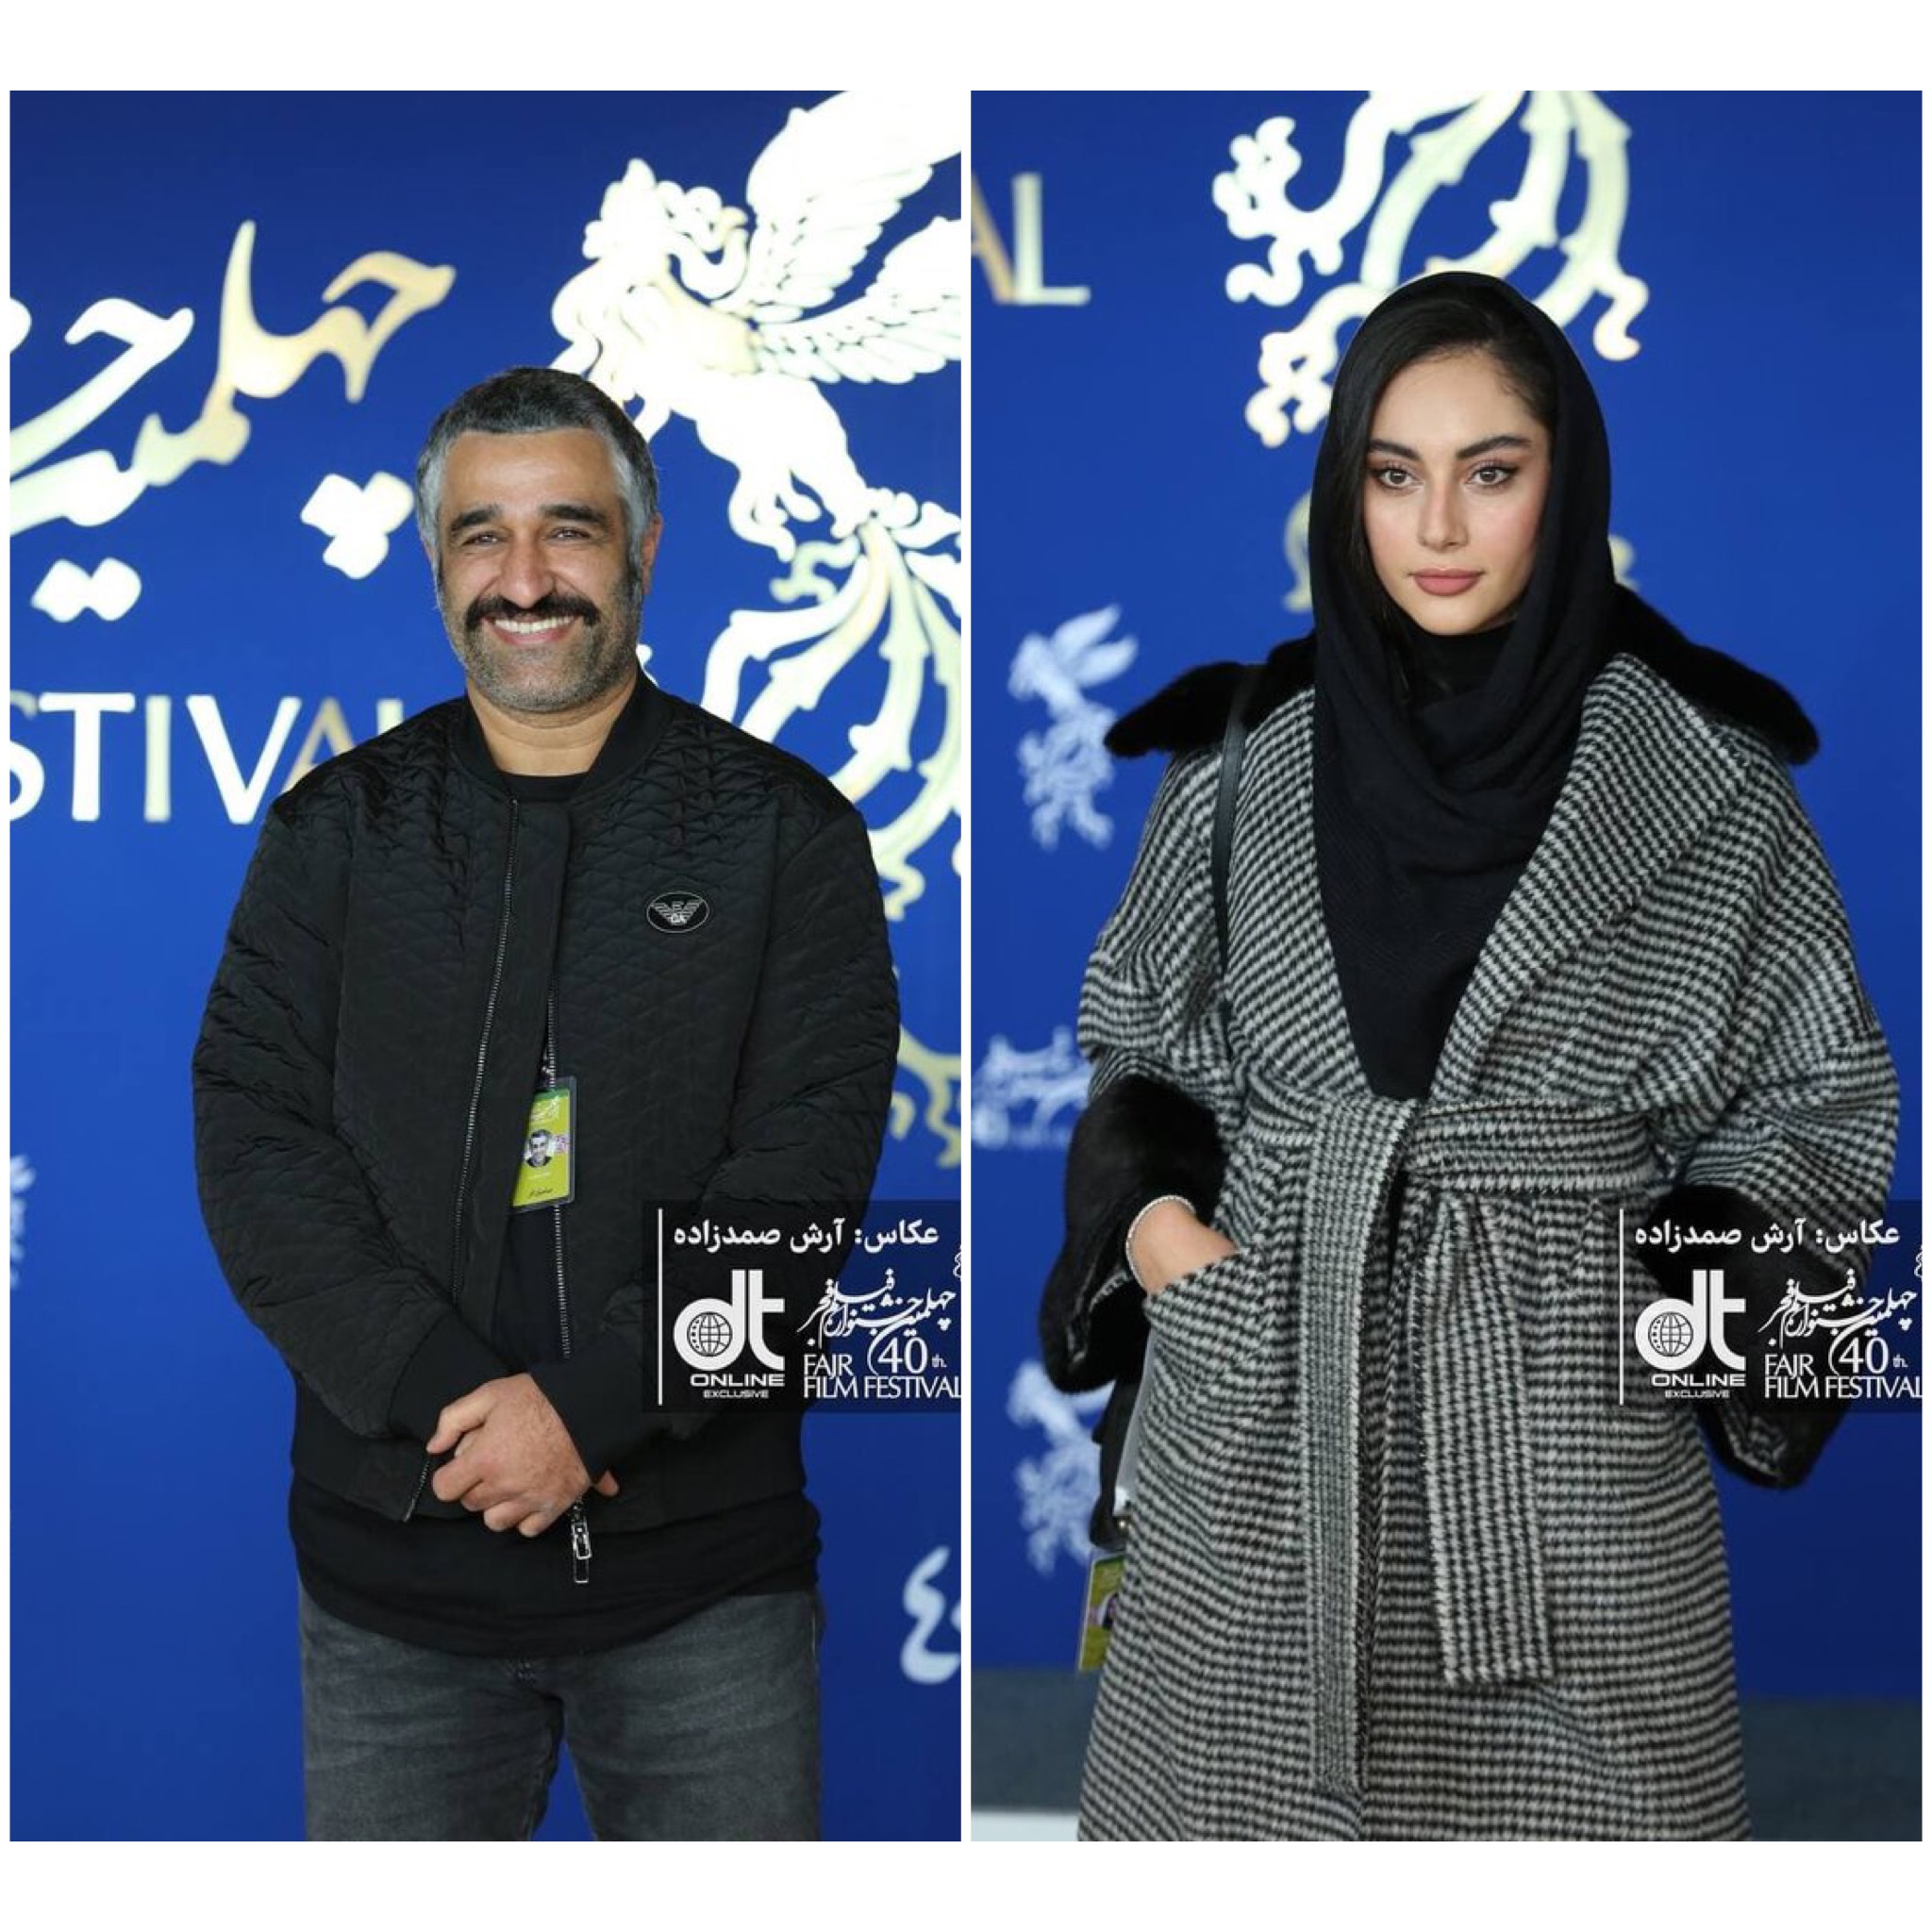 تیپ پژمان جمشیدی و ترلان پروانه در خانه جشنواره فیلم فجر (عكس)